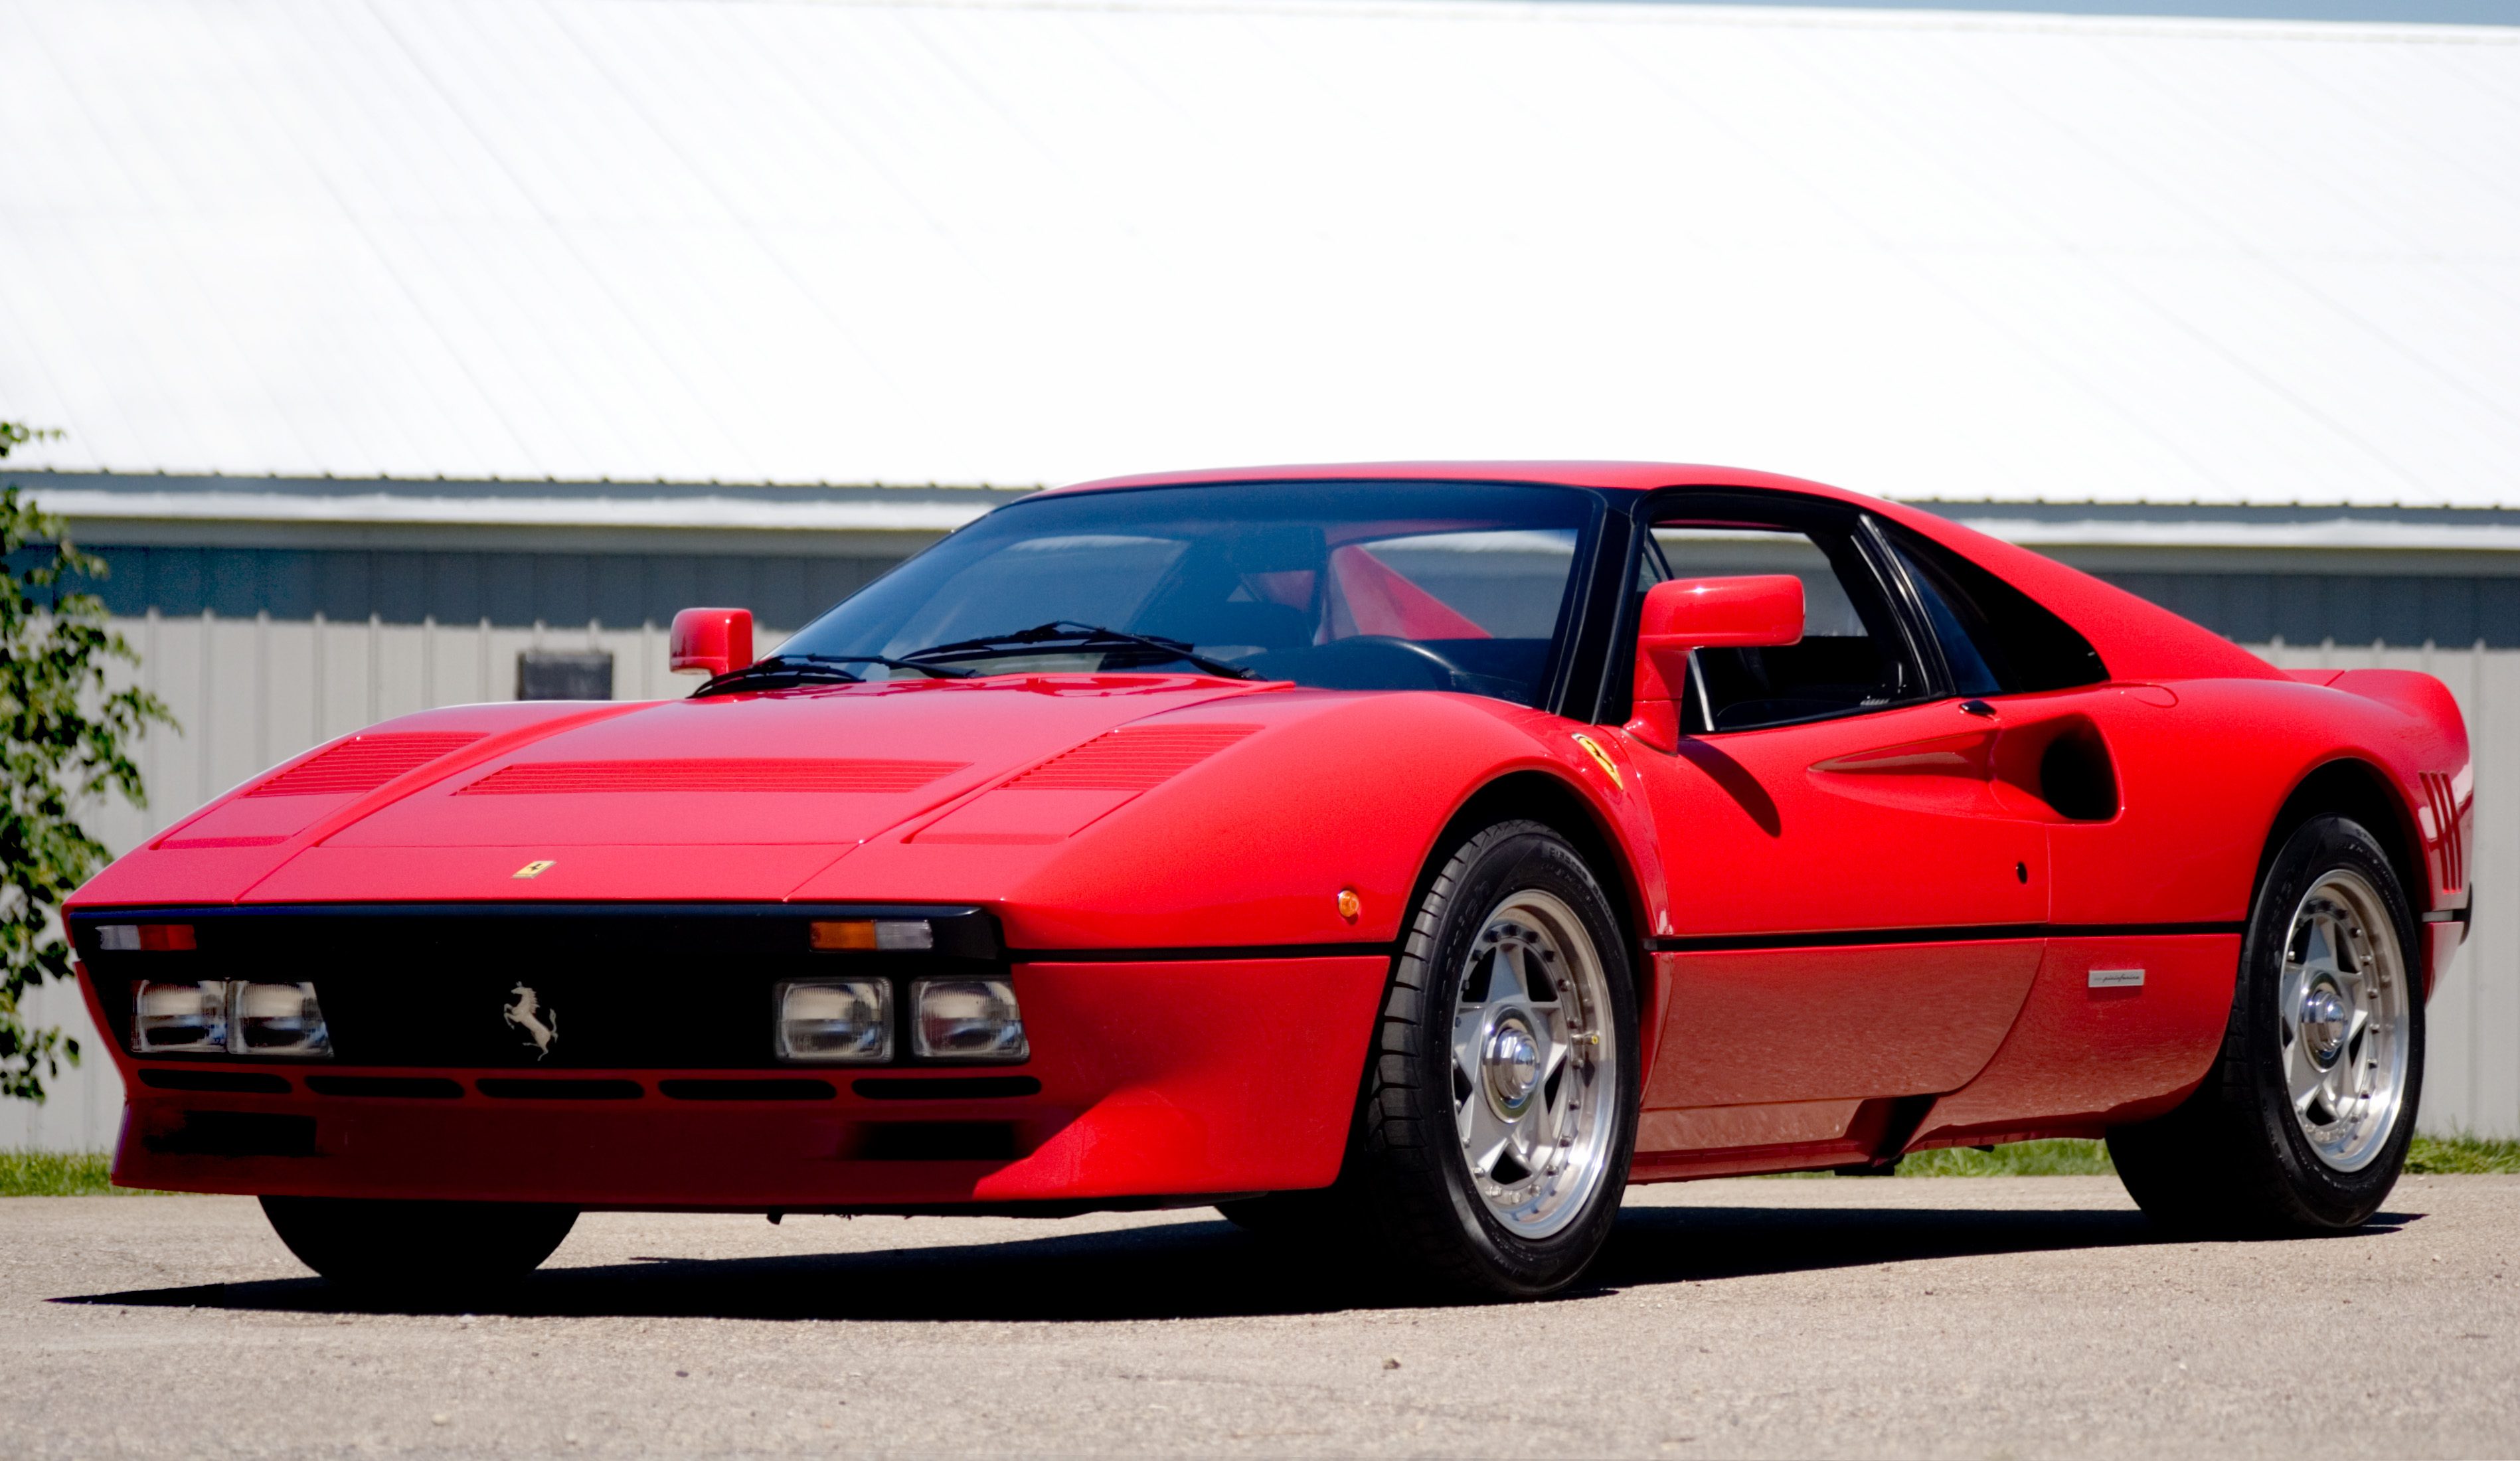 Ferrari 288 gto. Феррари 288 GTO. Ferrari 288 GTO 1984. Ferrari 1988 GTO. 1988 Ferrari 288 GTO.